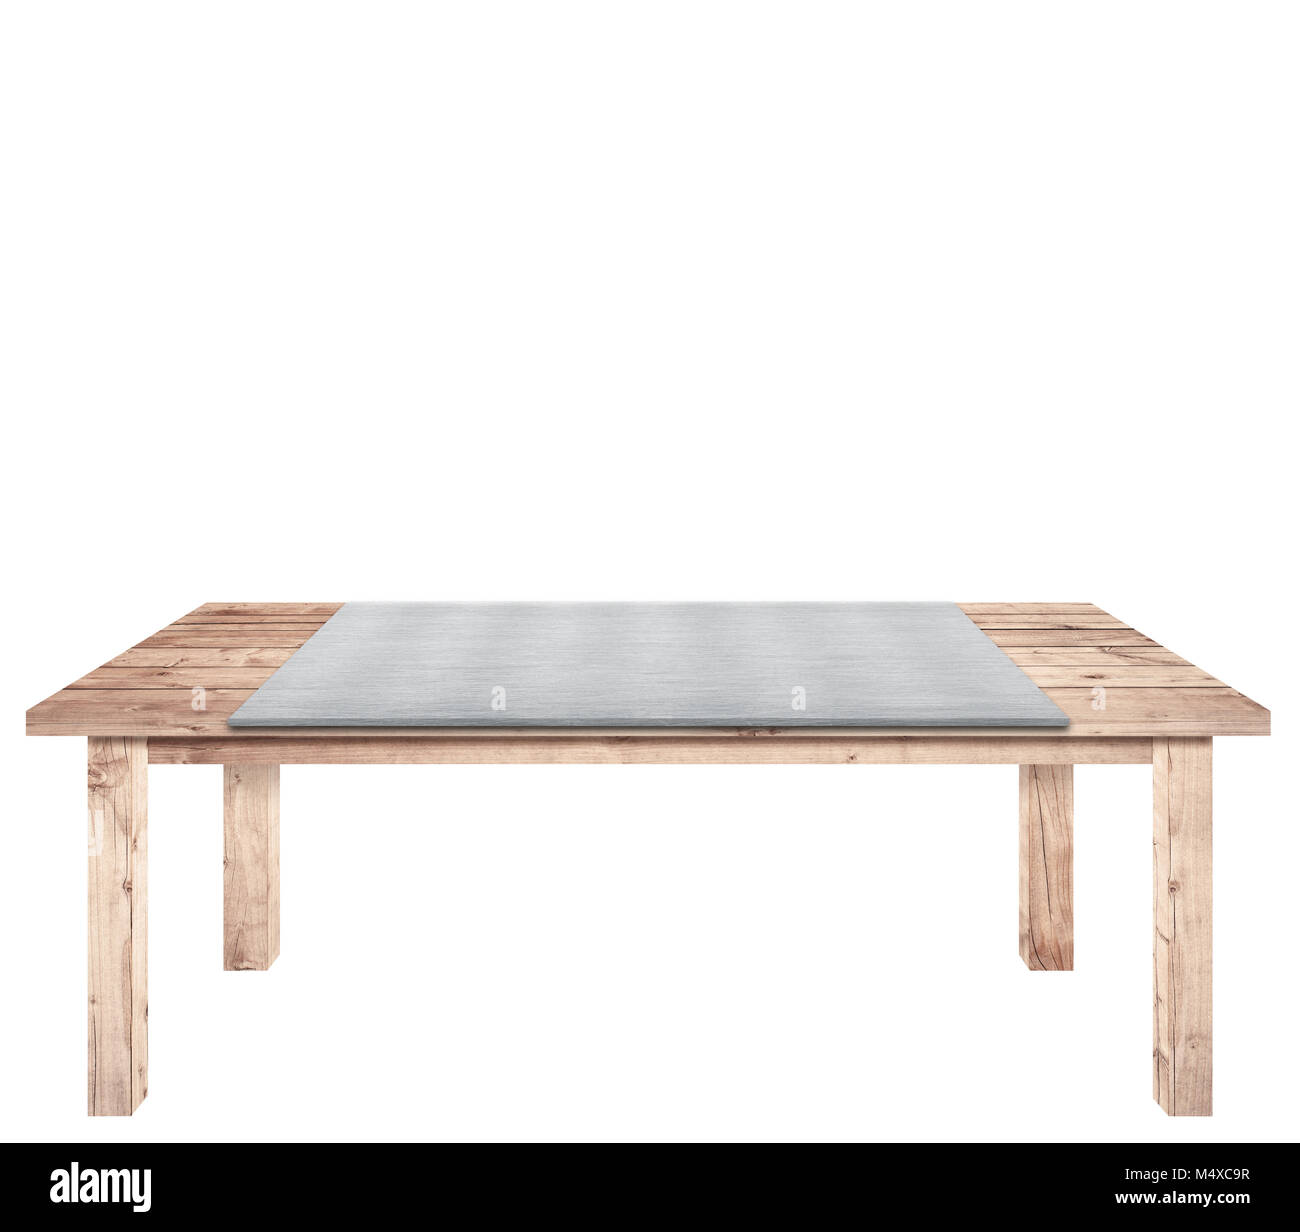 Brown tavolo in legno di plance di metallo, piastra in alluminio sulla parte superiore è isolato su sfondo bianco, utilizzato per visualizzare gli oggetti. Foto Stock